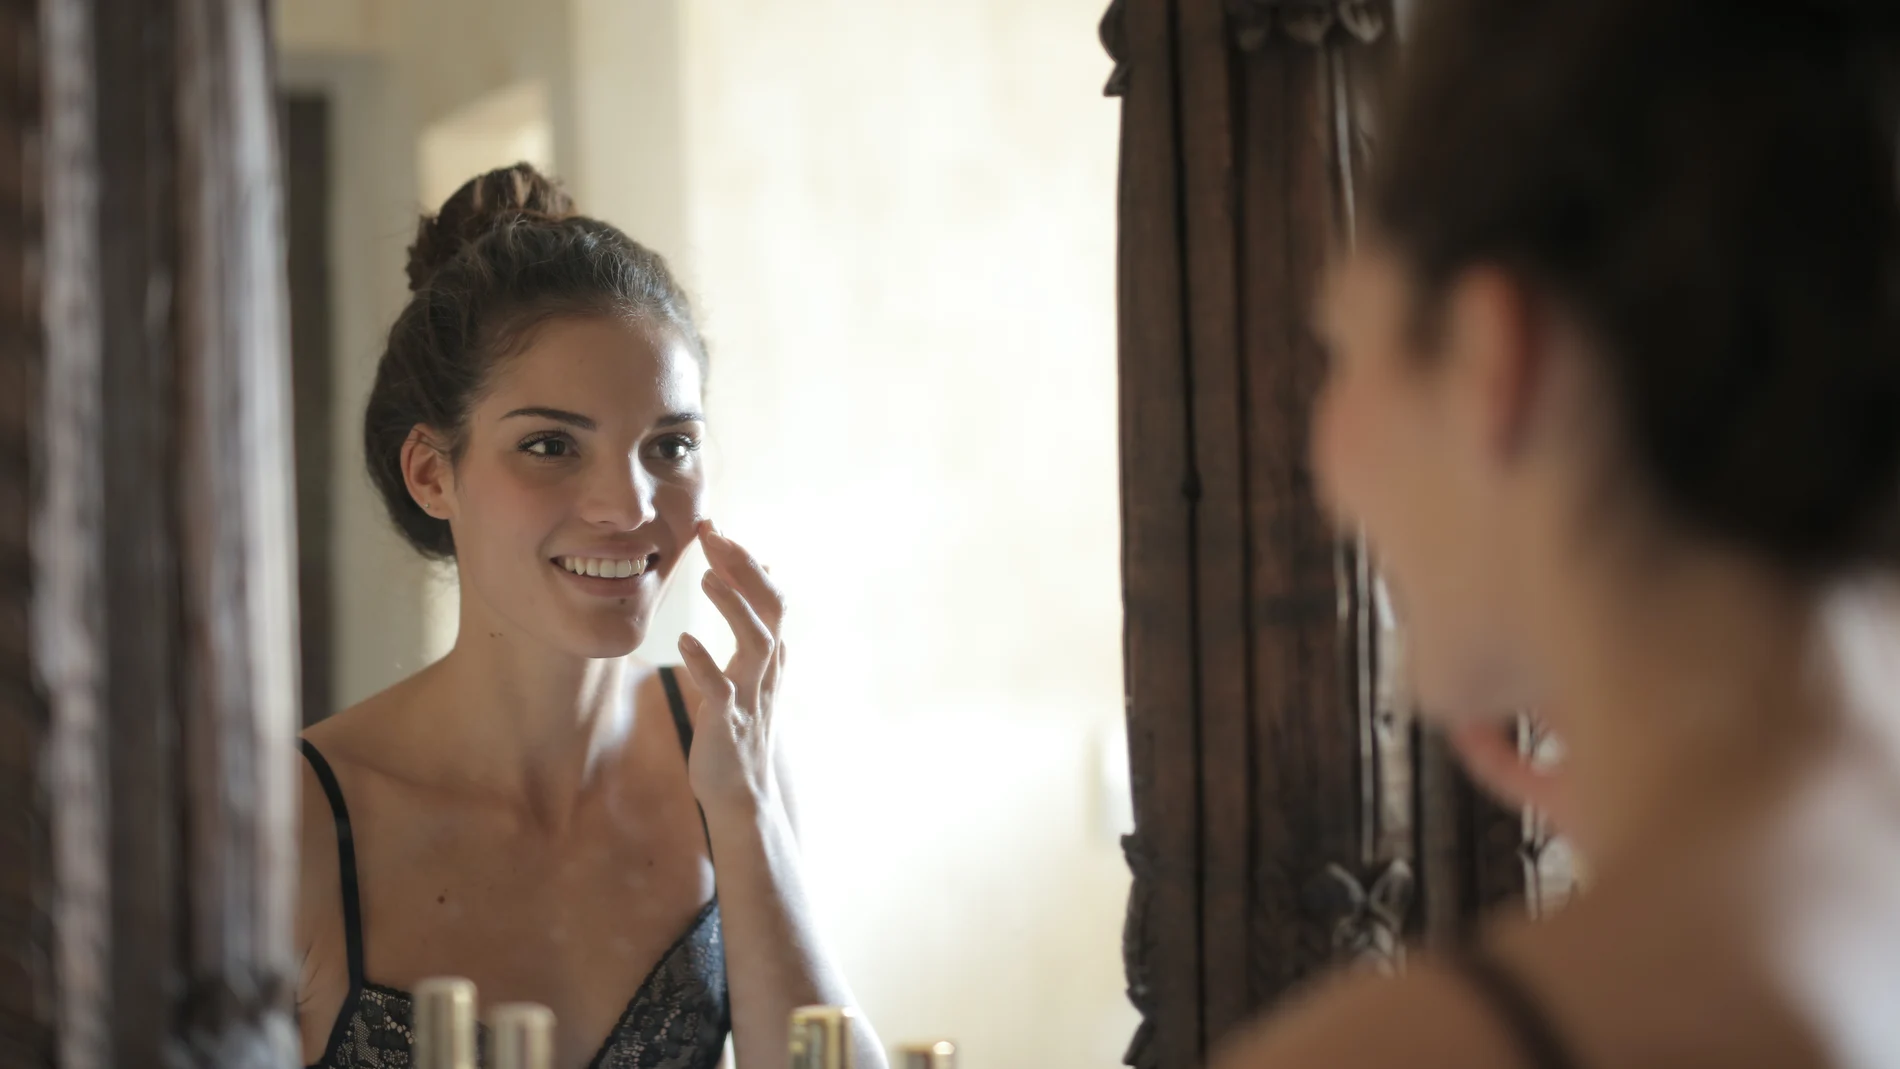 En la imagen, una mujer se aplica sus cosméticos antes de dormir.